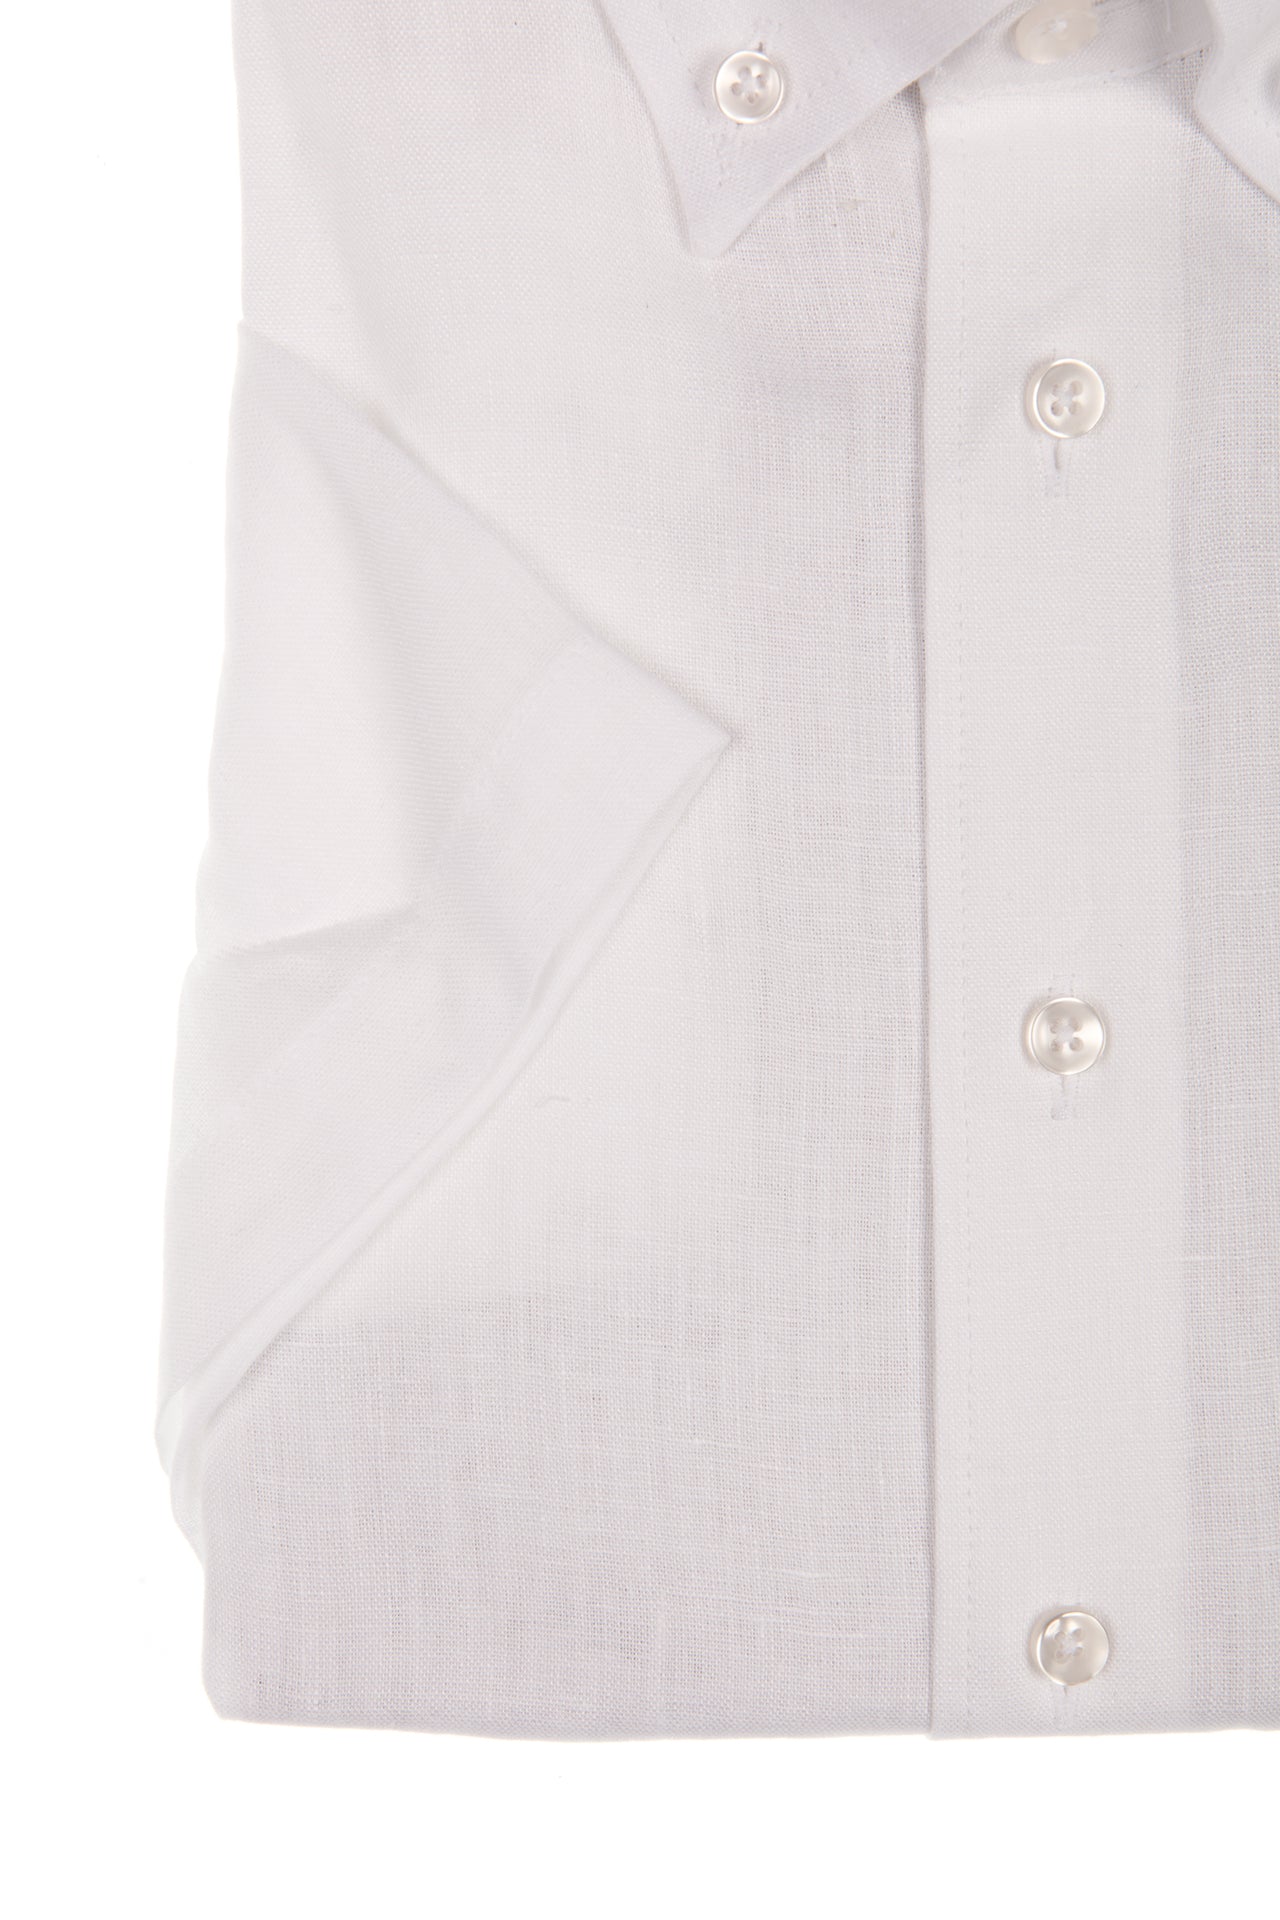 Wit linnen hemd met korte mouw